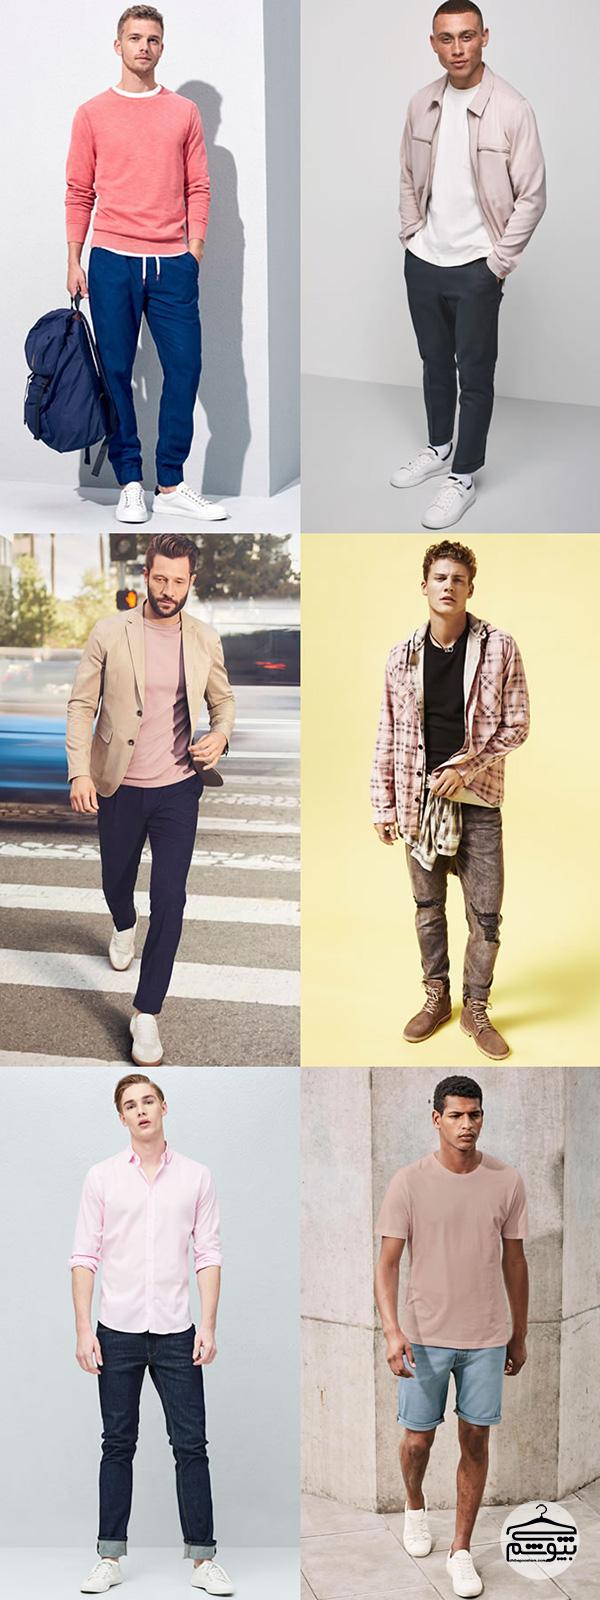 راهنمای انتخاب لباس مردانه از میان 6 رنگ دشوار